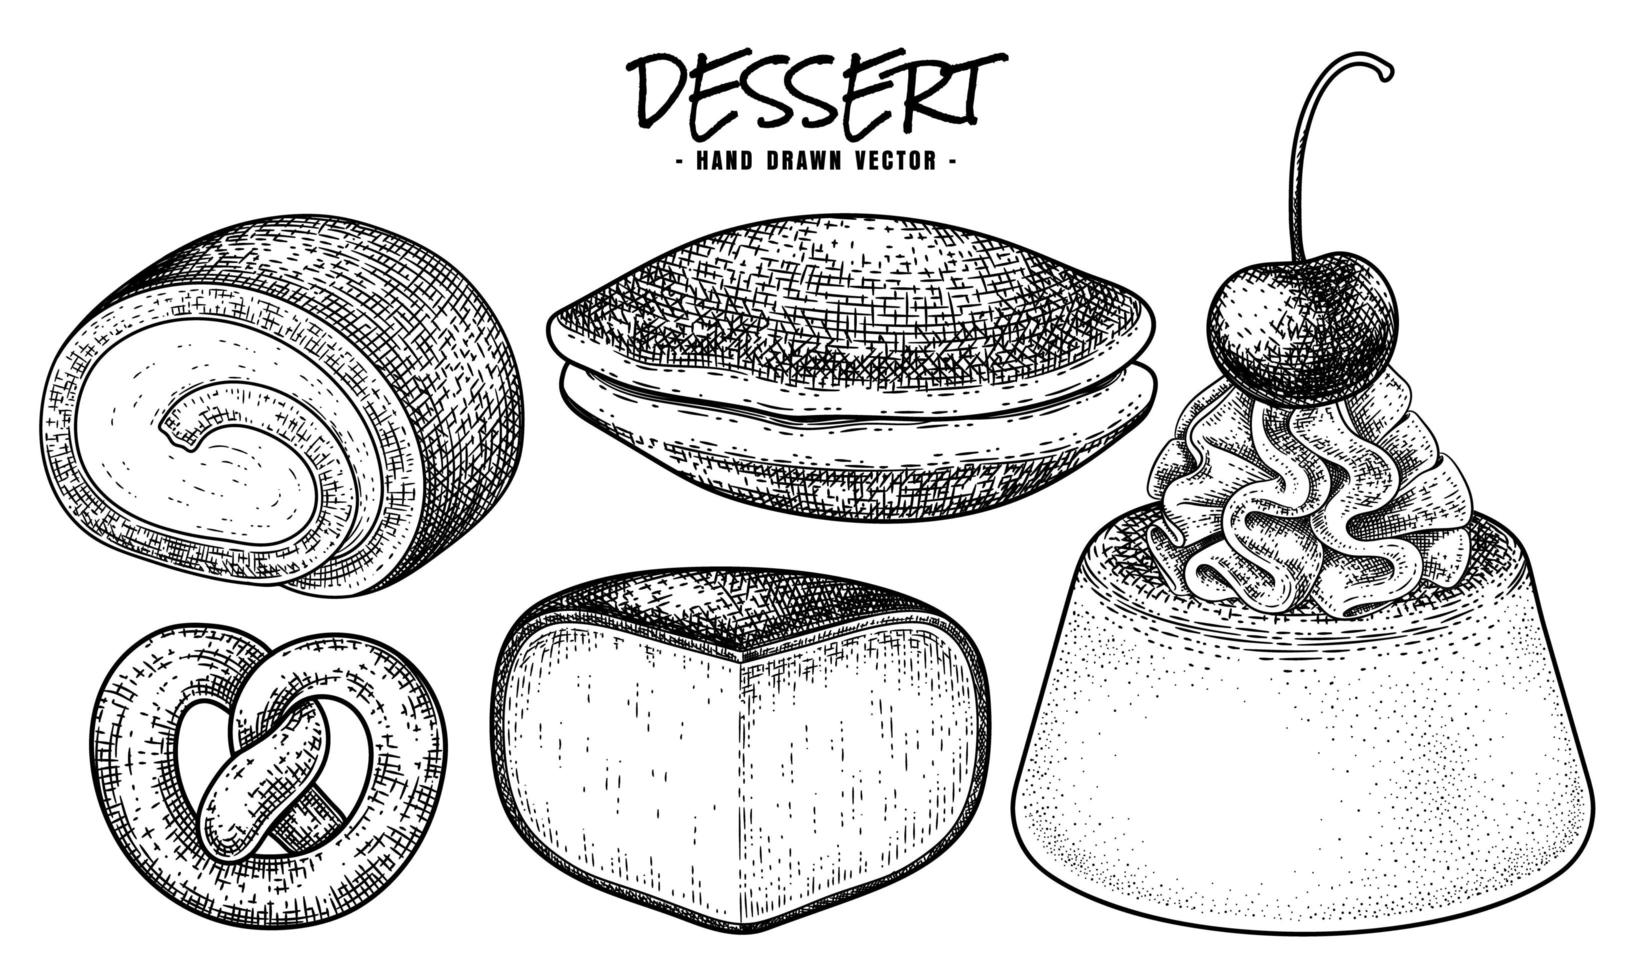 Dessert hand drawn sketch vector decorative set